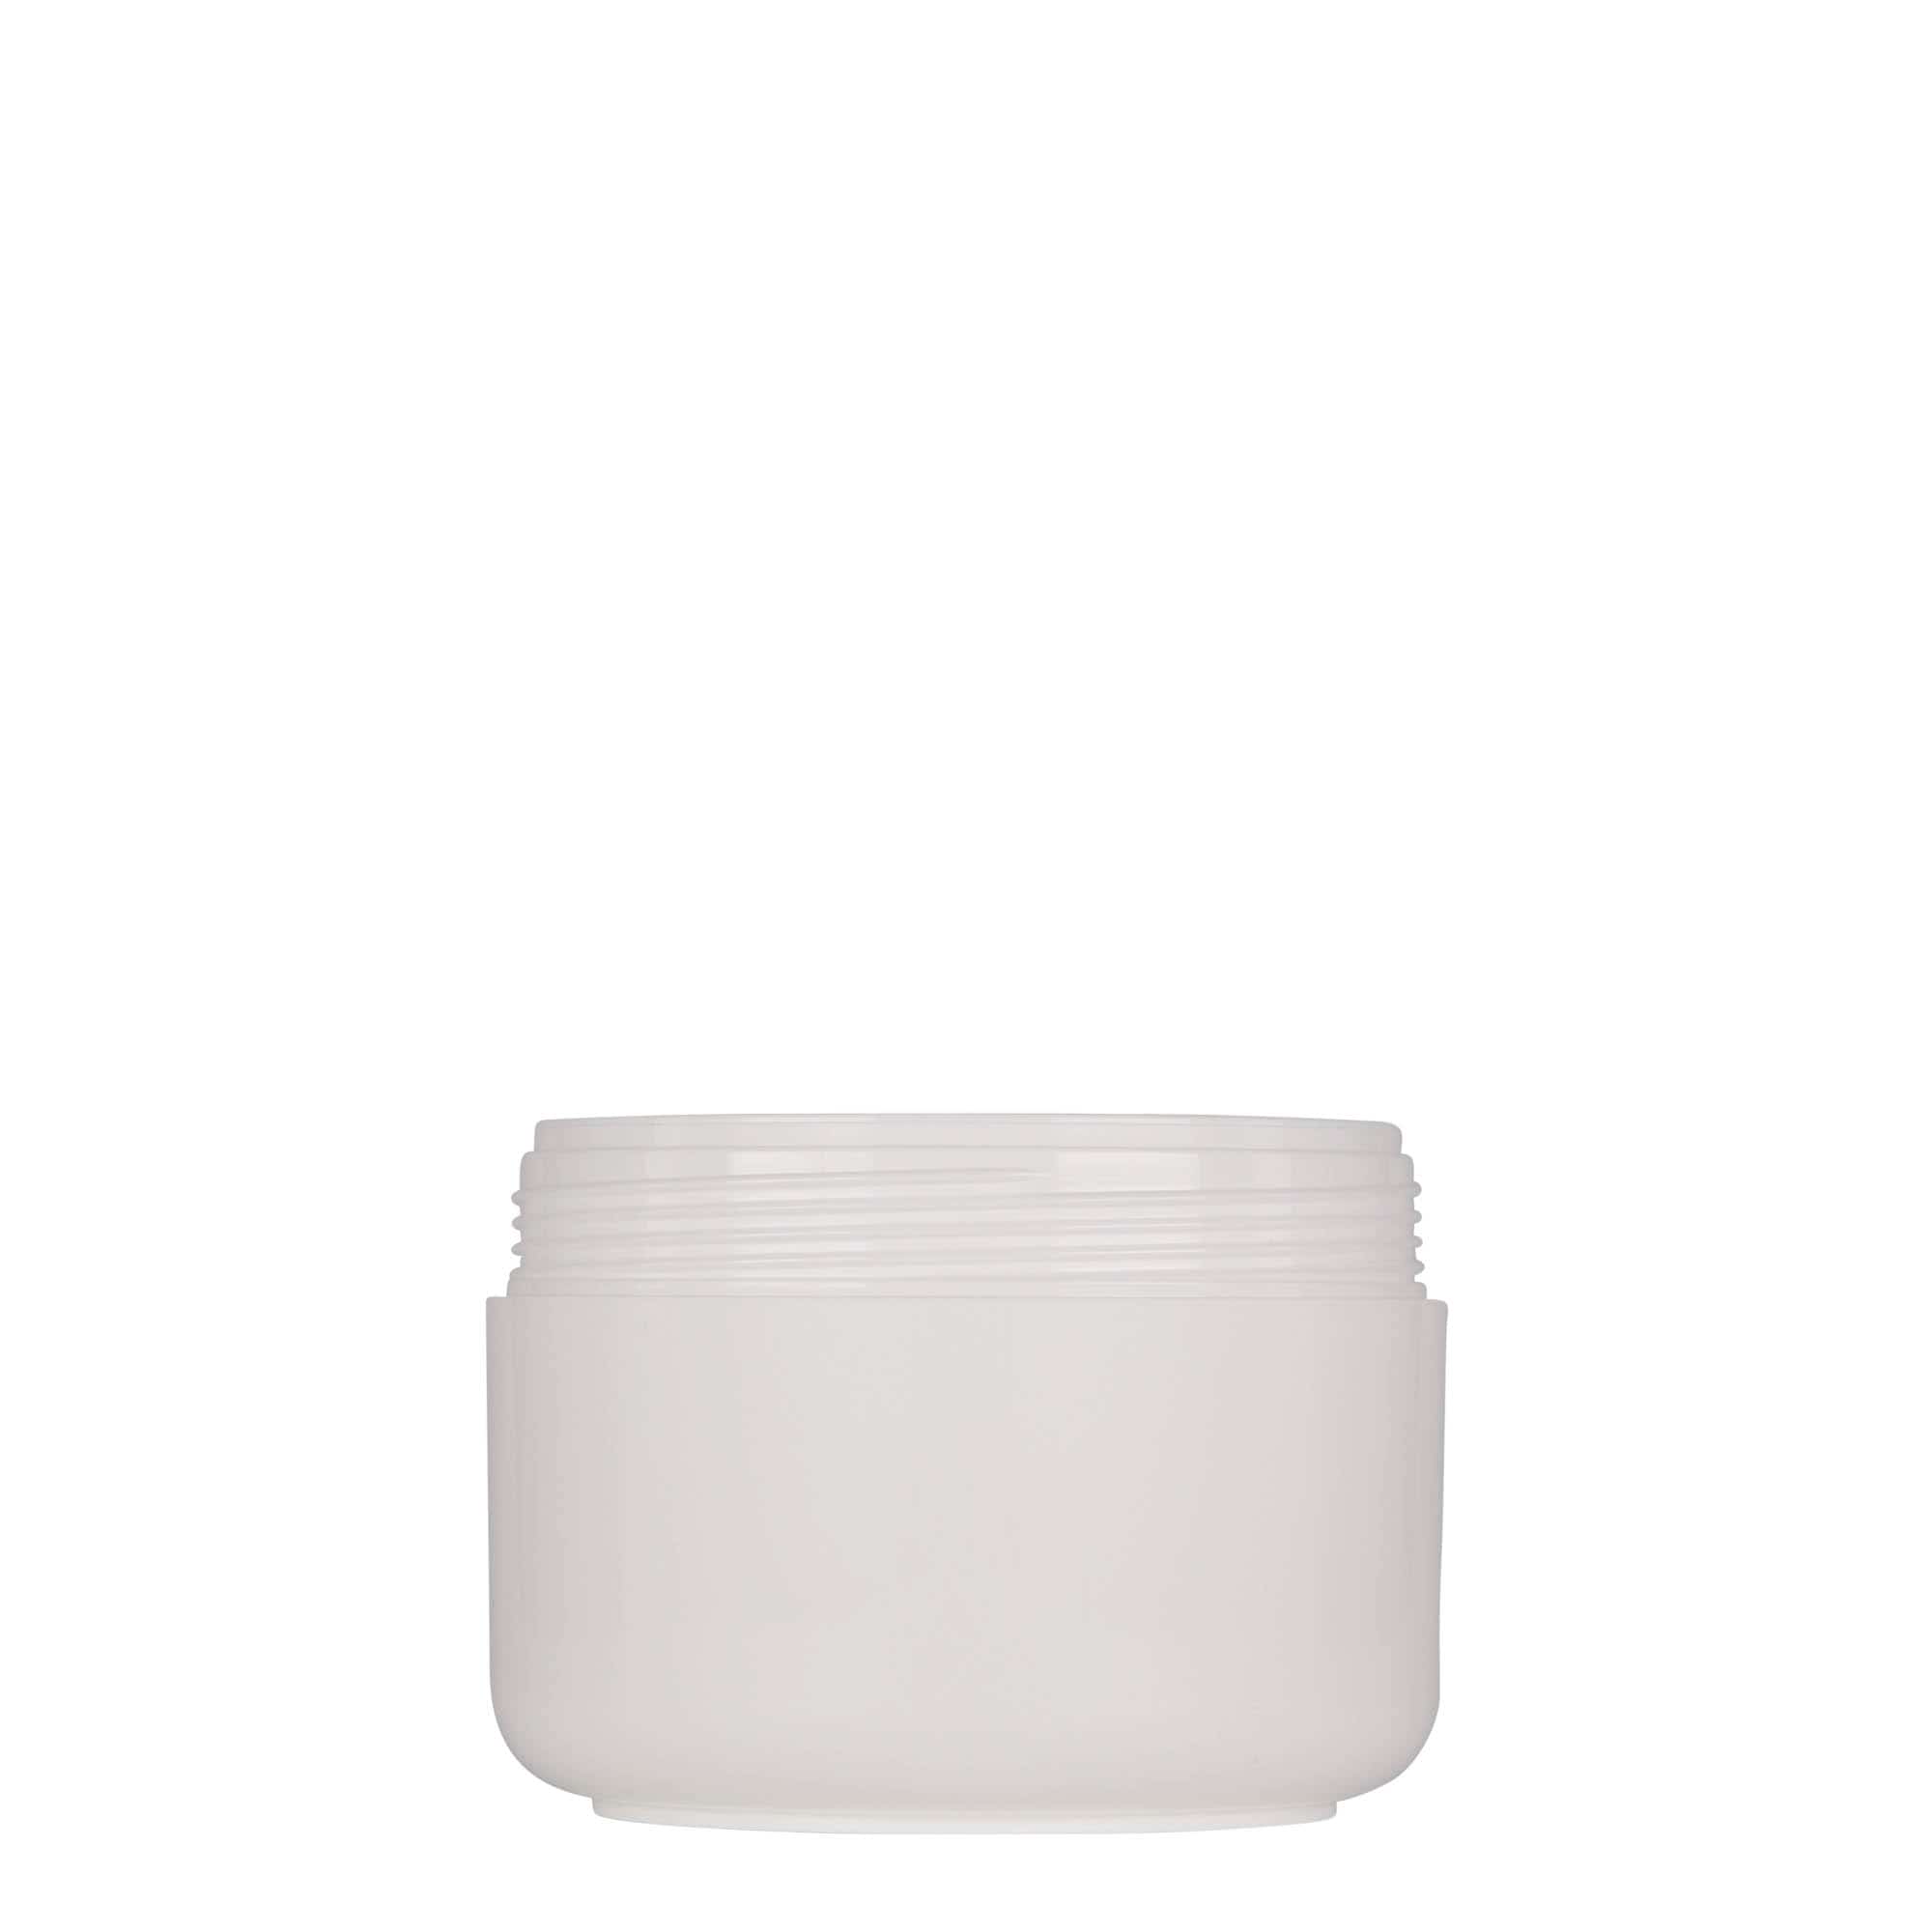 200 ml słoiczek z tworzywa sztucznego 'Bianca', PP, kolor biały, zamknięcie: zakrętka